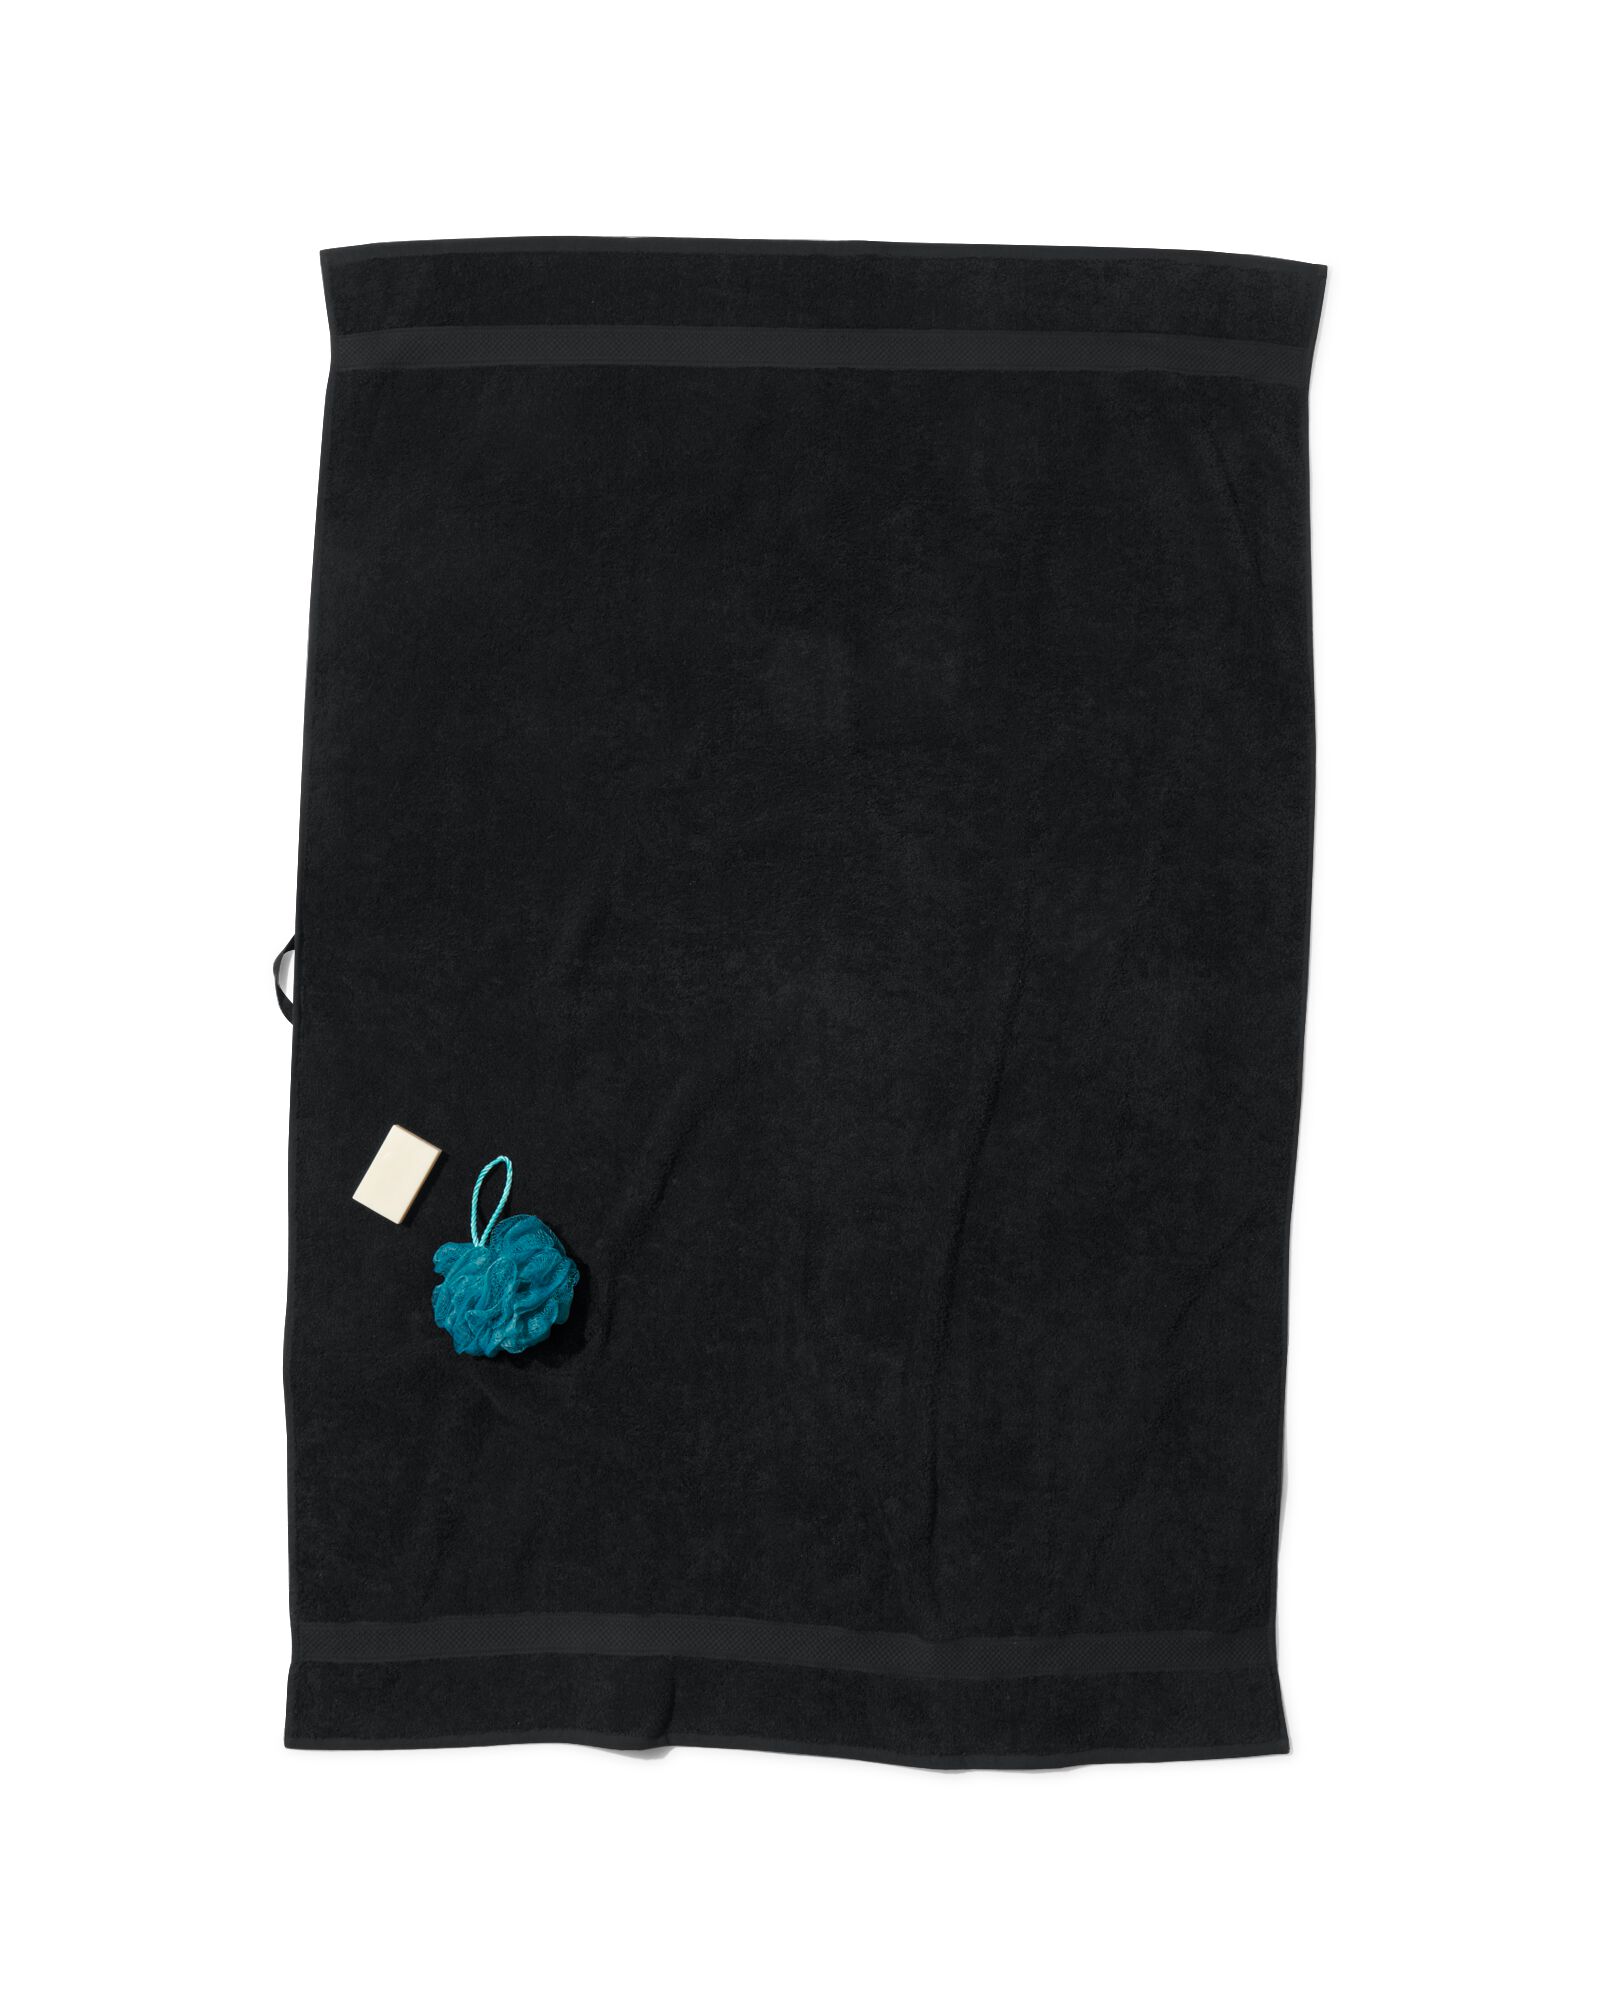 handdoek 100x150 zware kwaliteit zwart zwart handdoek 100 x 150 - 5230083 - HEMA